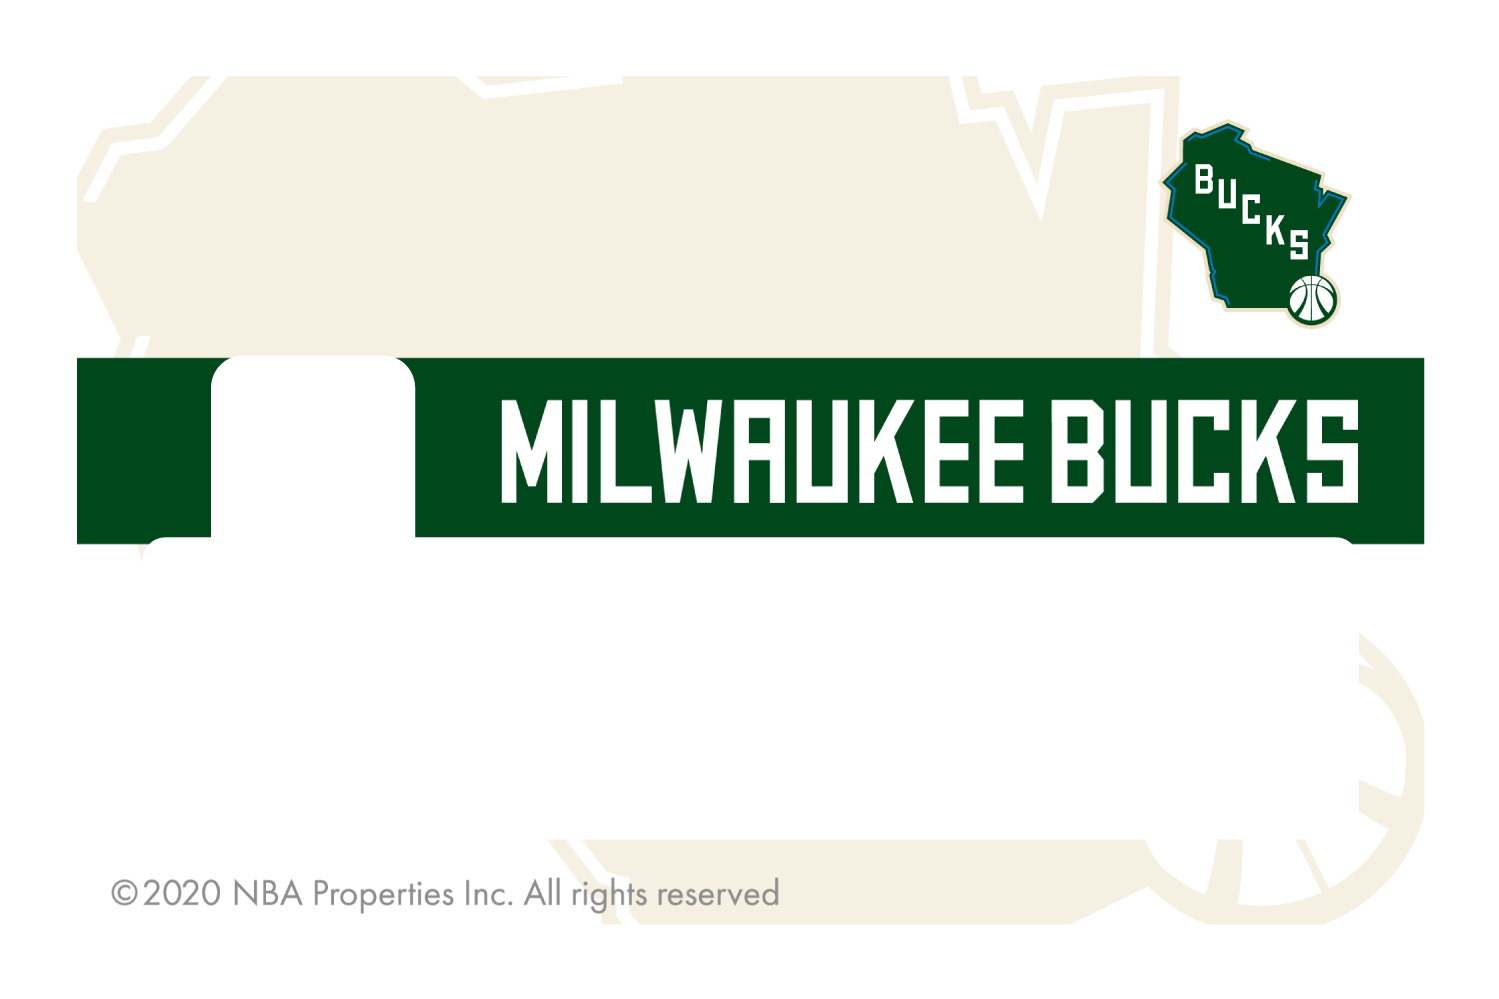 Milwaukee Bucks: Midcourt